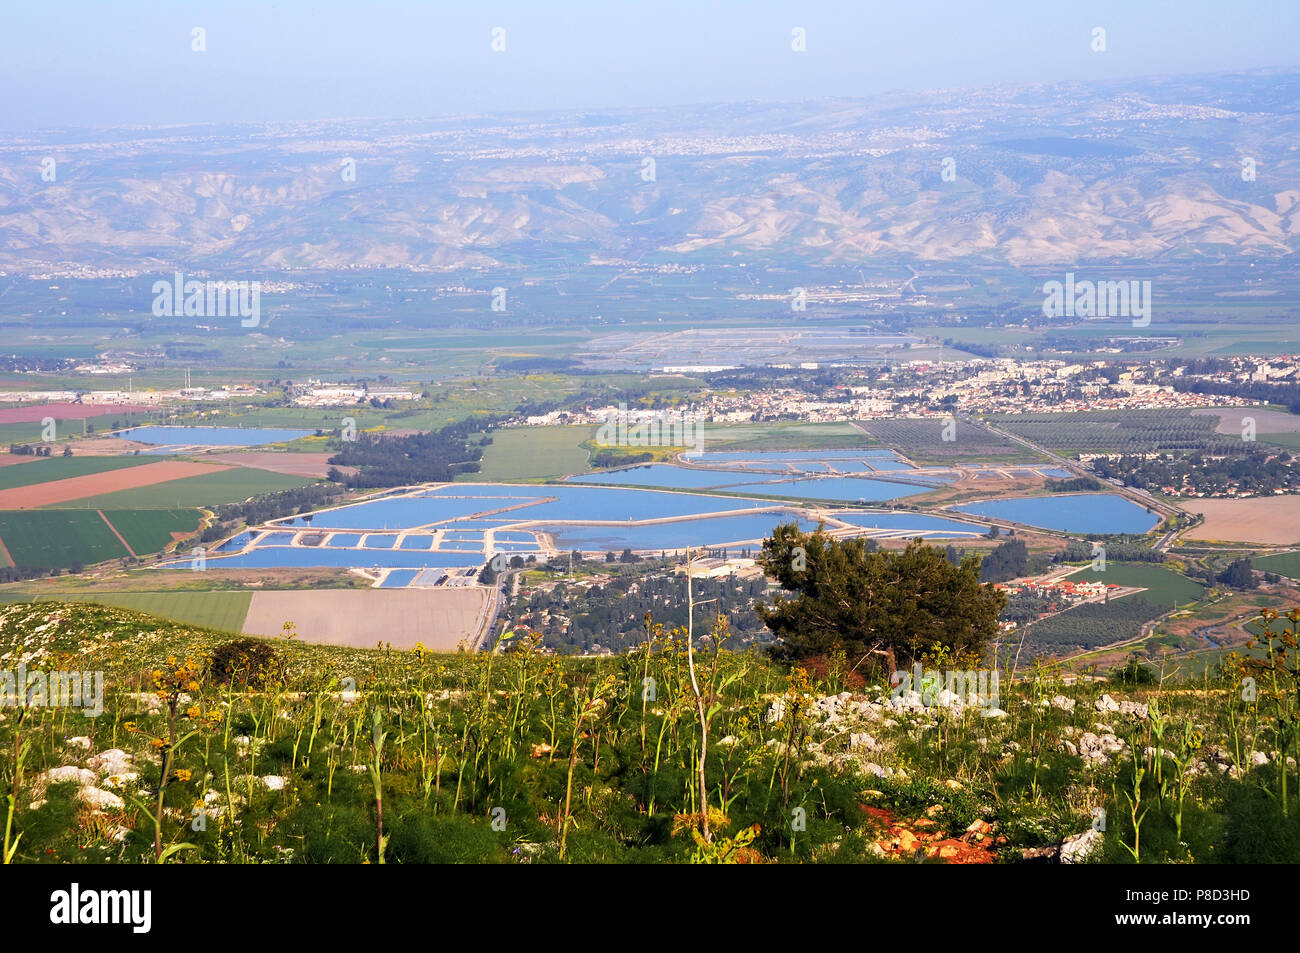 La vallée de Beit She'an, Israël Banque D'Images